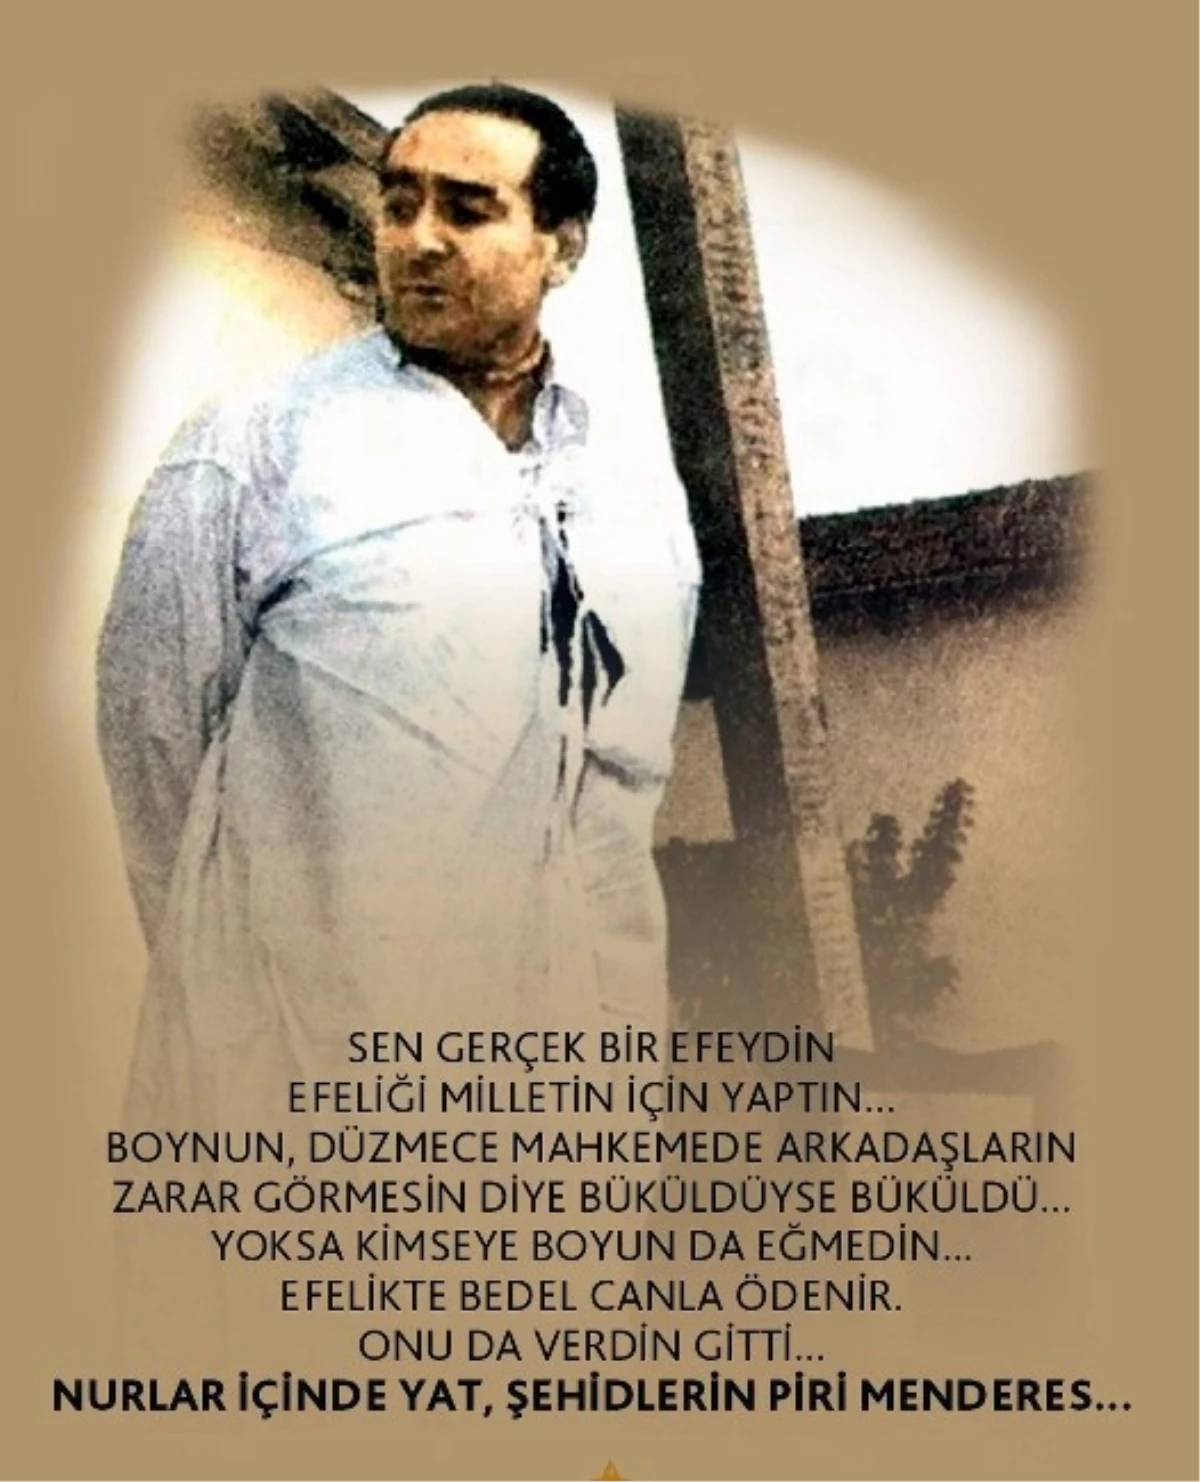 17 Eylül 1961 Türk Siyasi Hayatının Yüz Karasıdır"